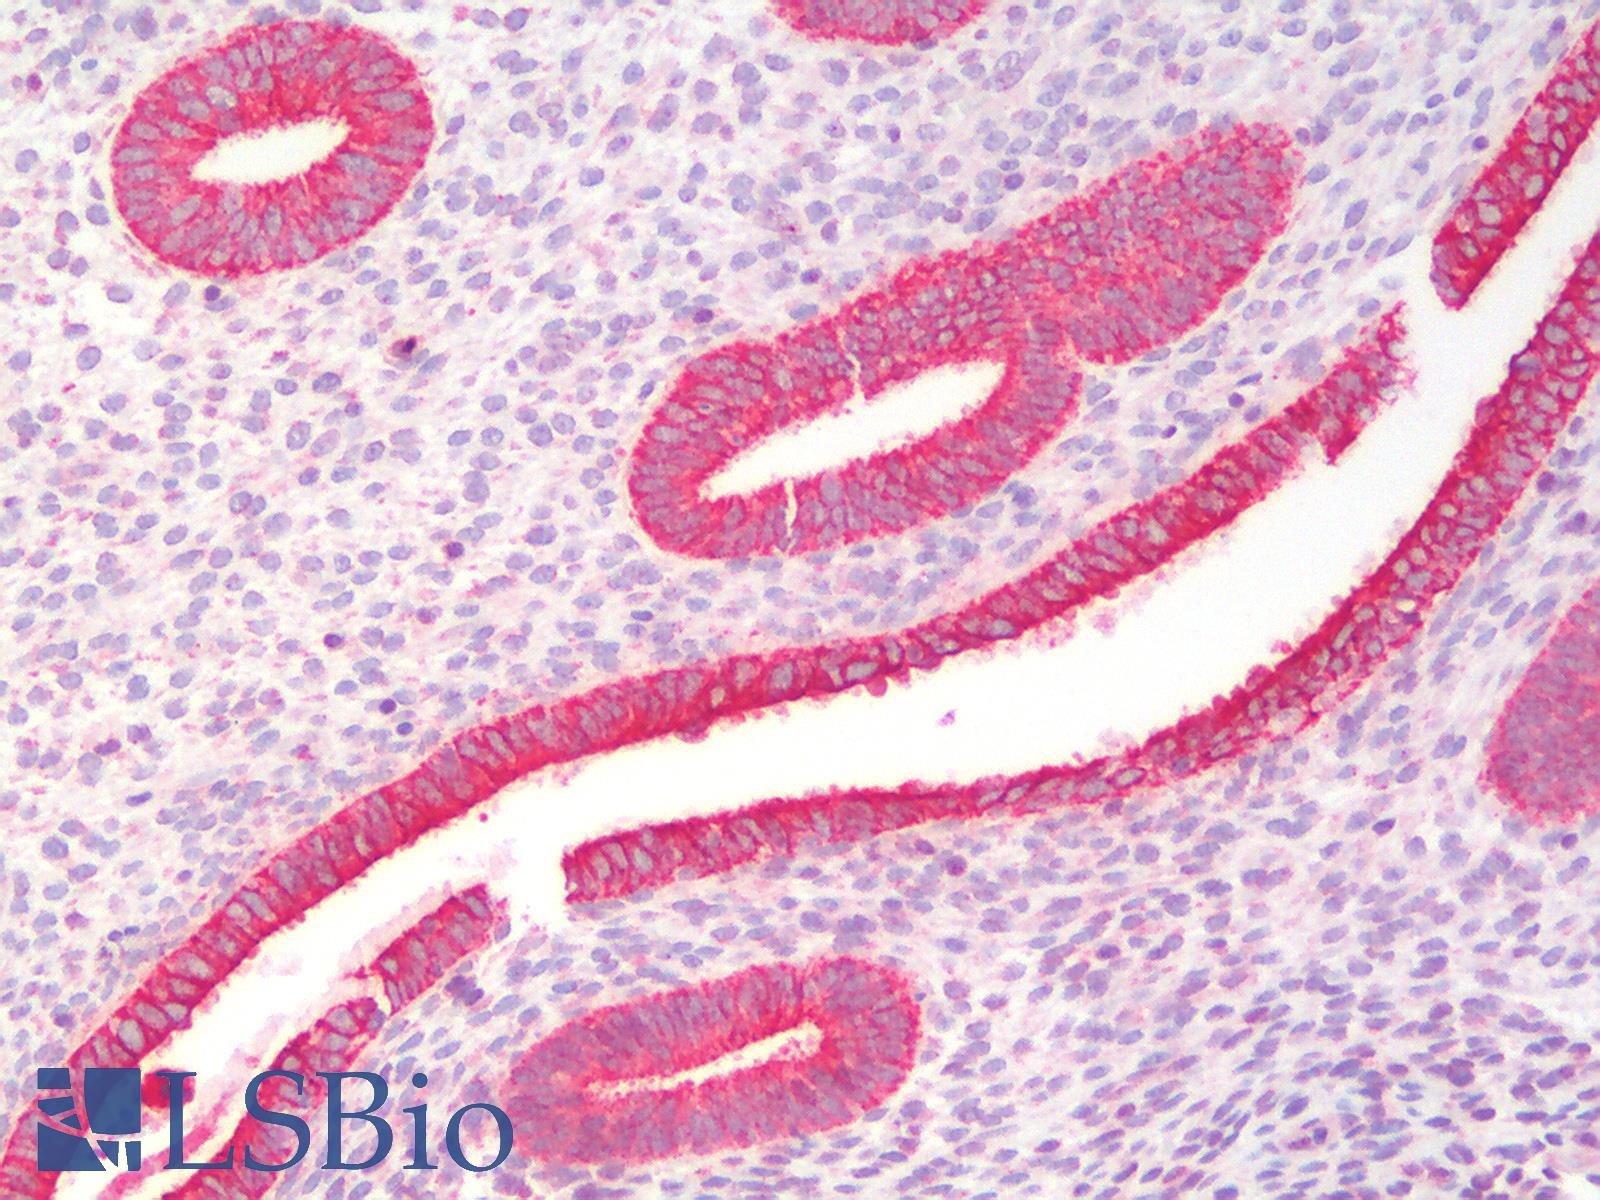 KRT19 / CK19 / Cytokeratin 19 Antibody - Human Uterus: Formalin-Fixed, Paraffin-Embedded (FFPE)